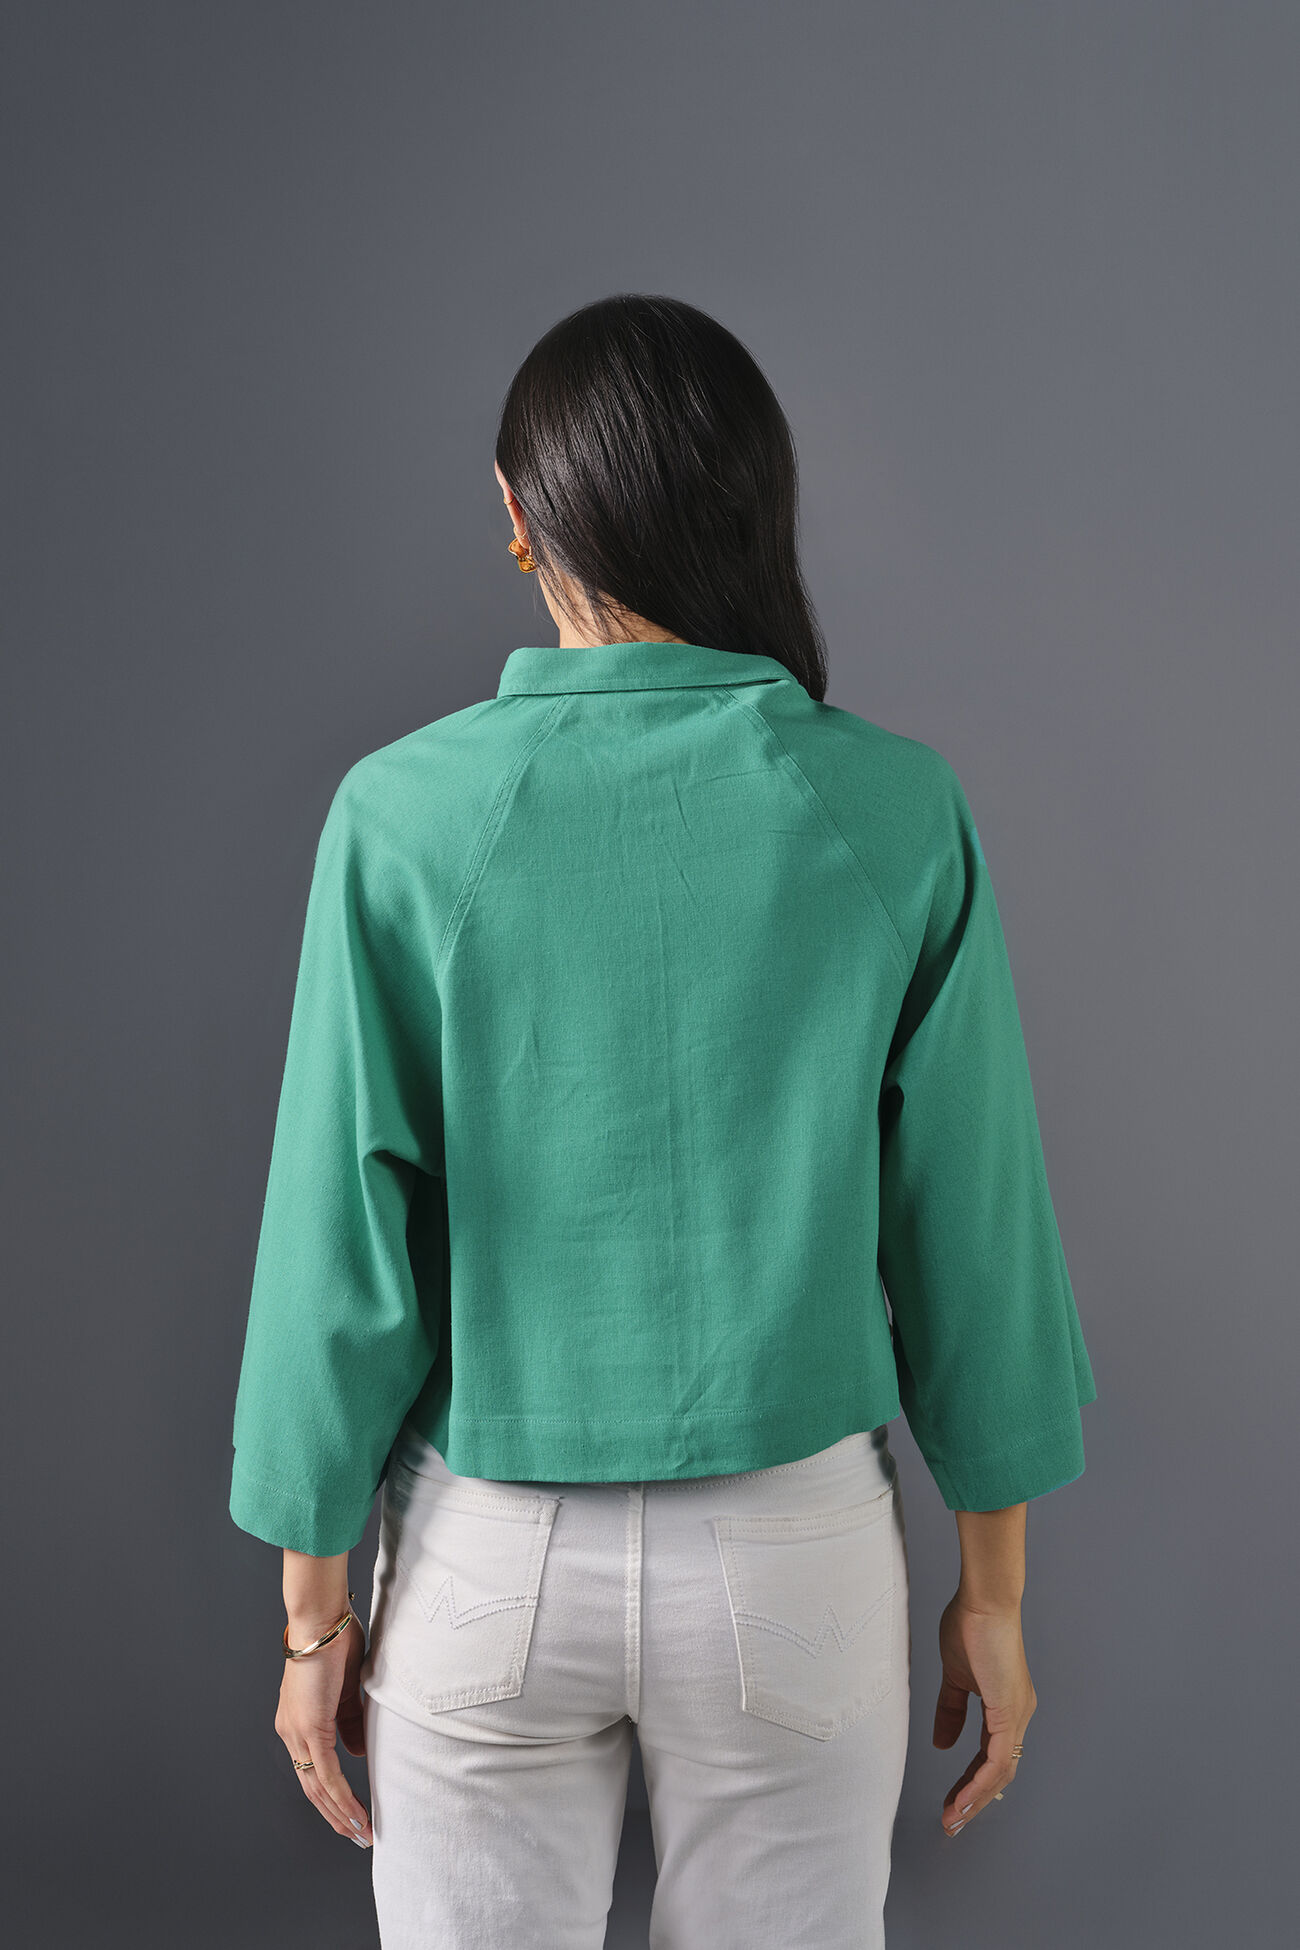 Sway Viscose Shirt, Turquoise, image 3